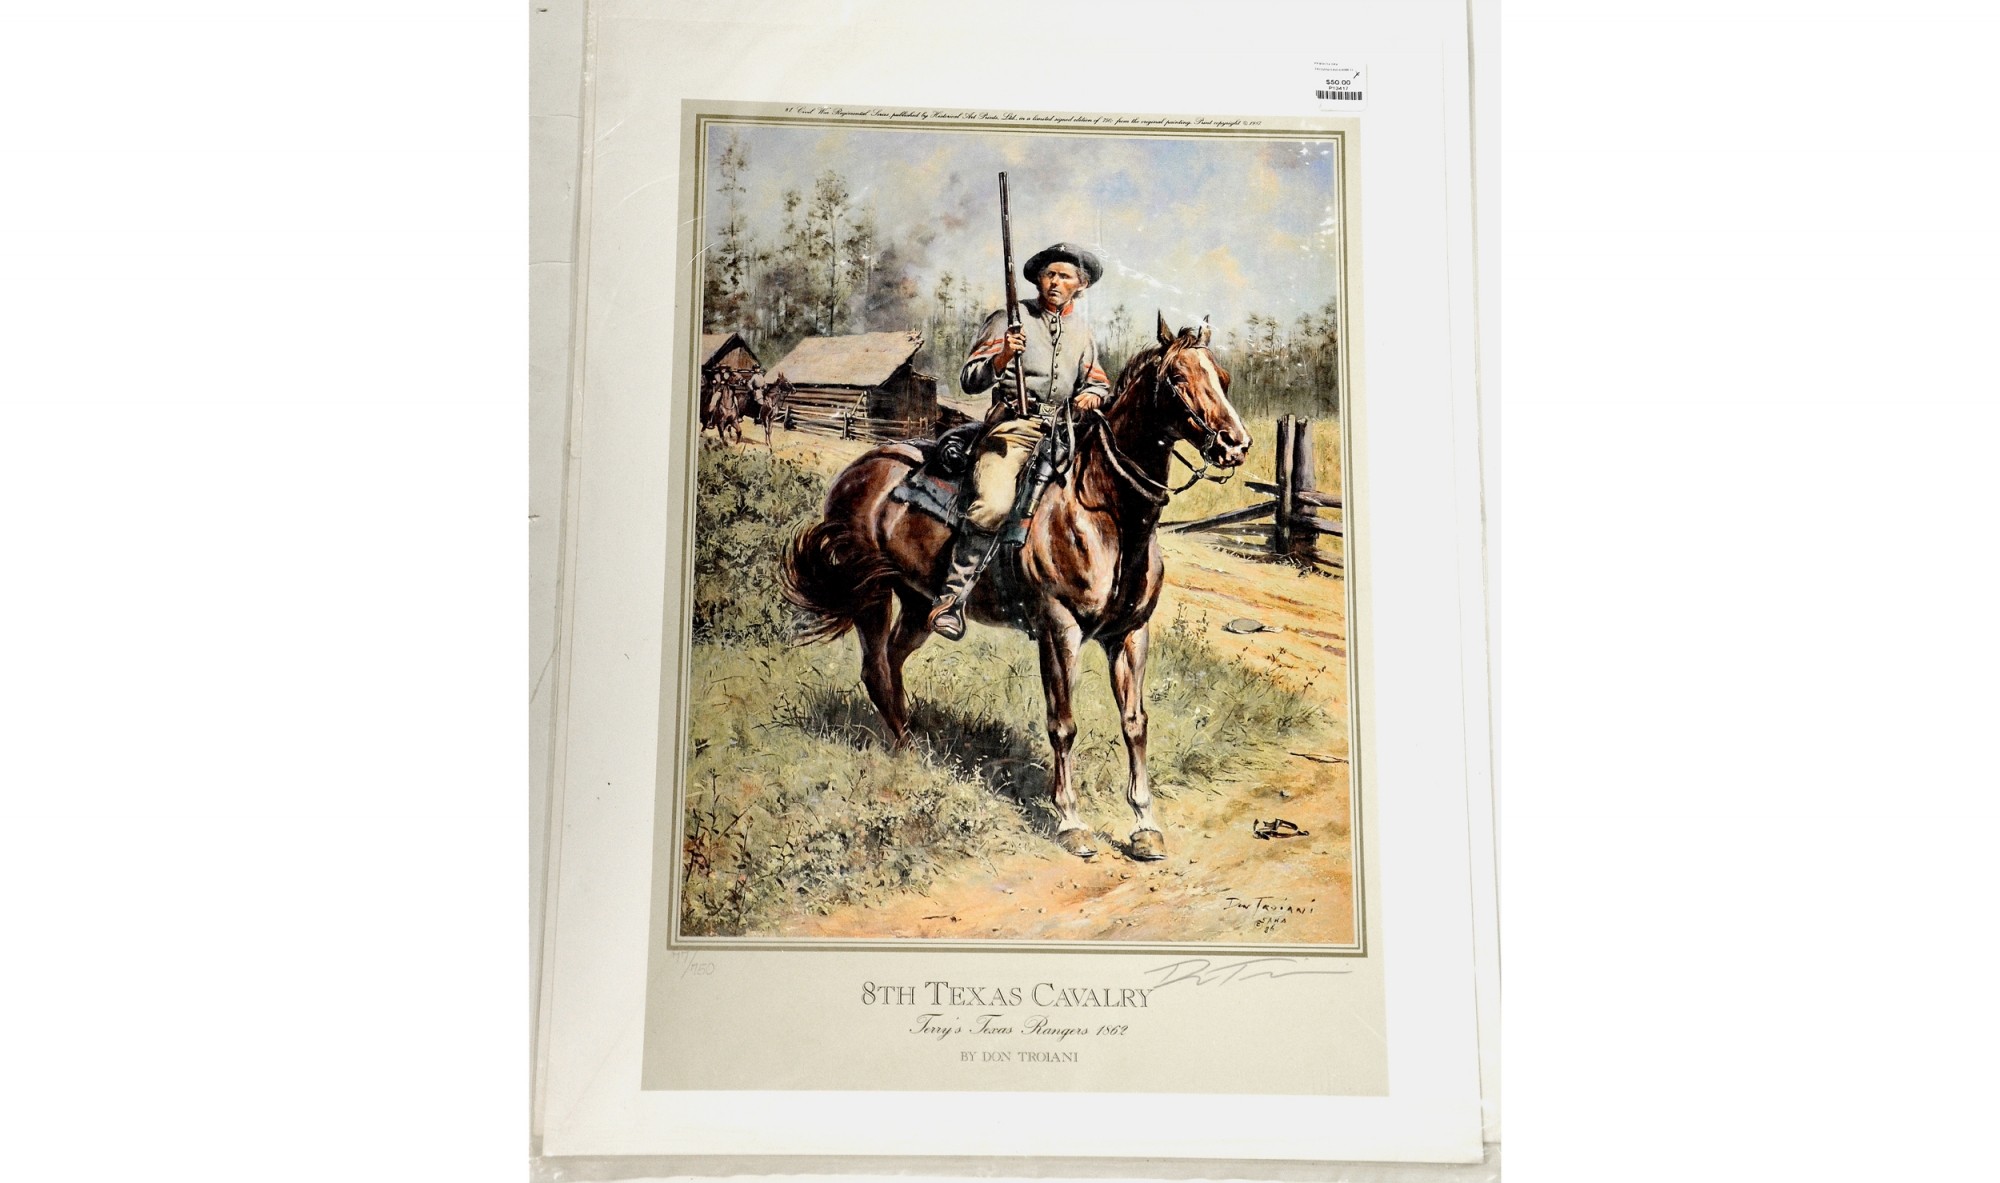 Eighth Texas Cavalry [Terry's Texas Rangers]